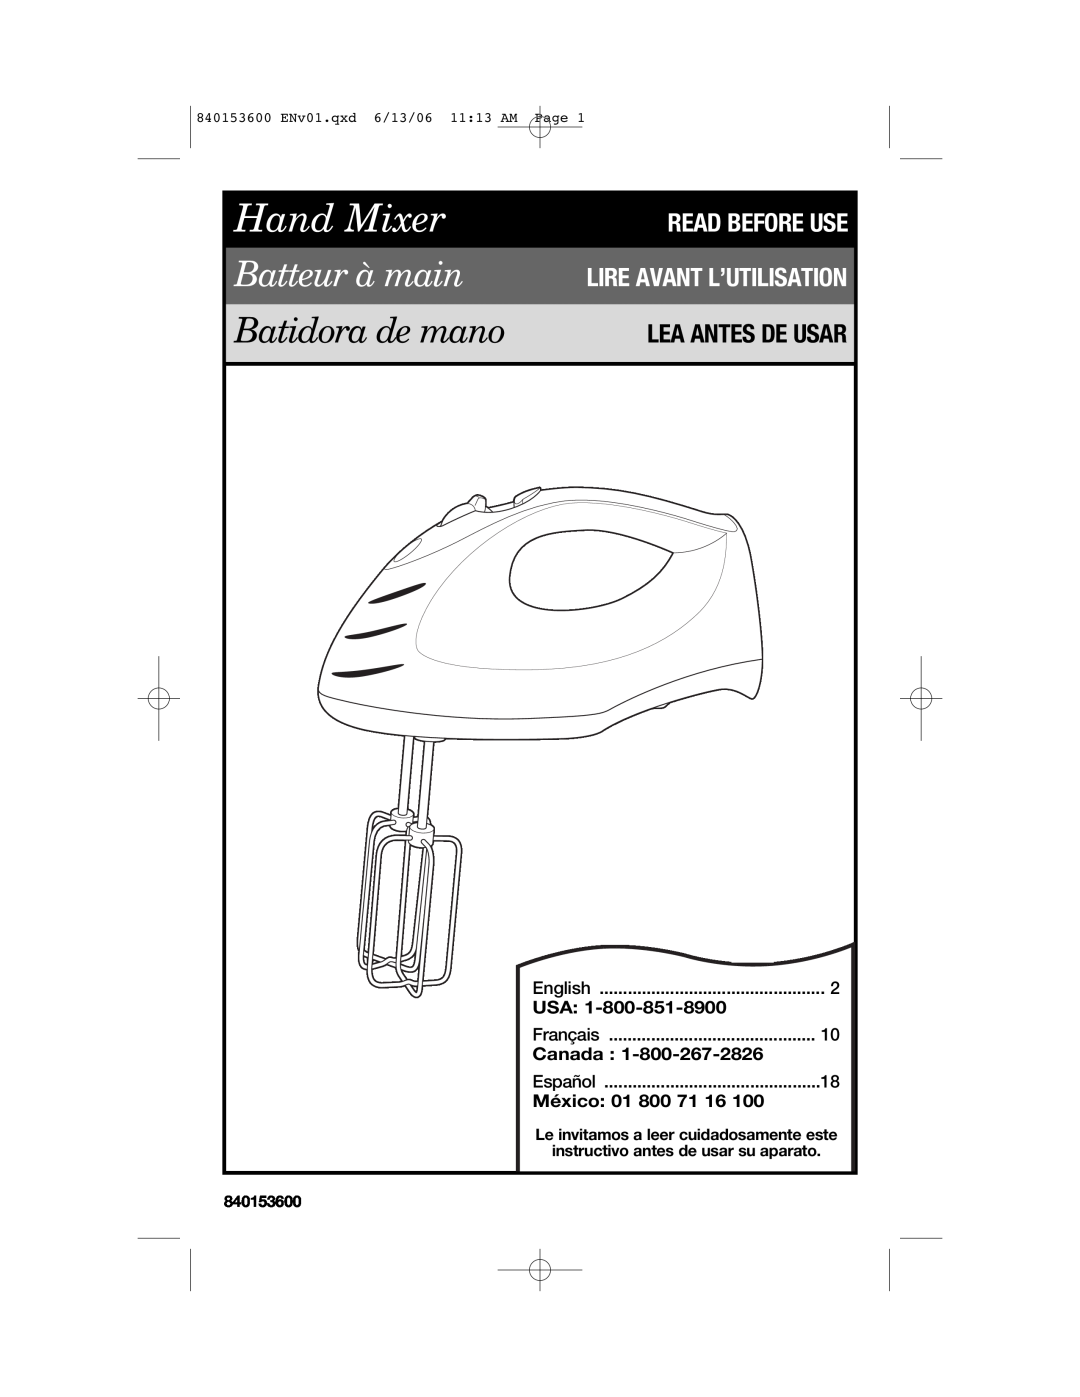 Hamilton Beach 62660 manual Lea Antes De Usar, Canada, México, Hand Mixer, Batteur à main, Batidora de mano 